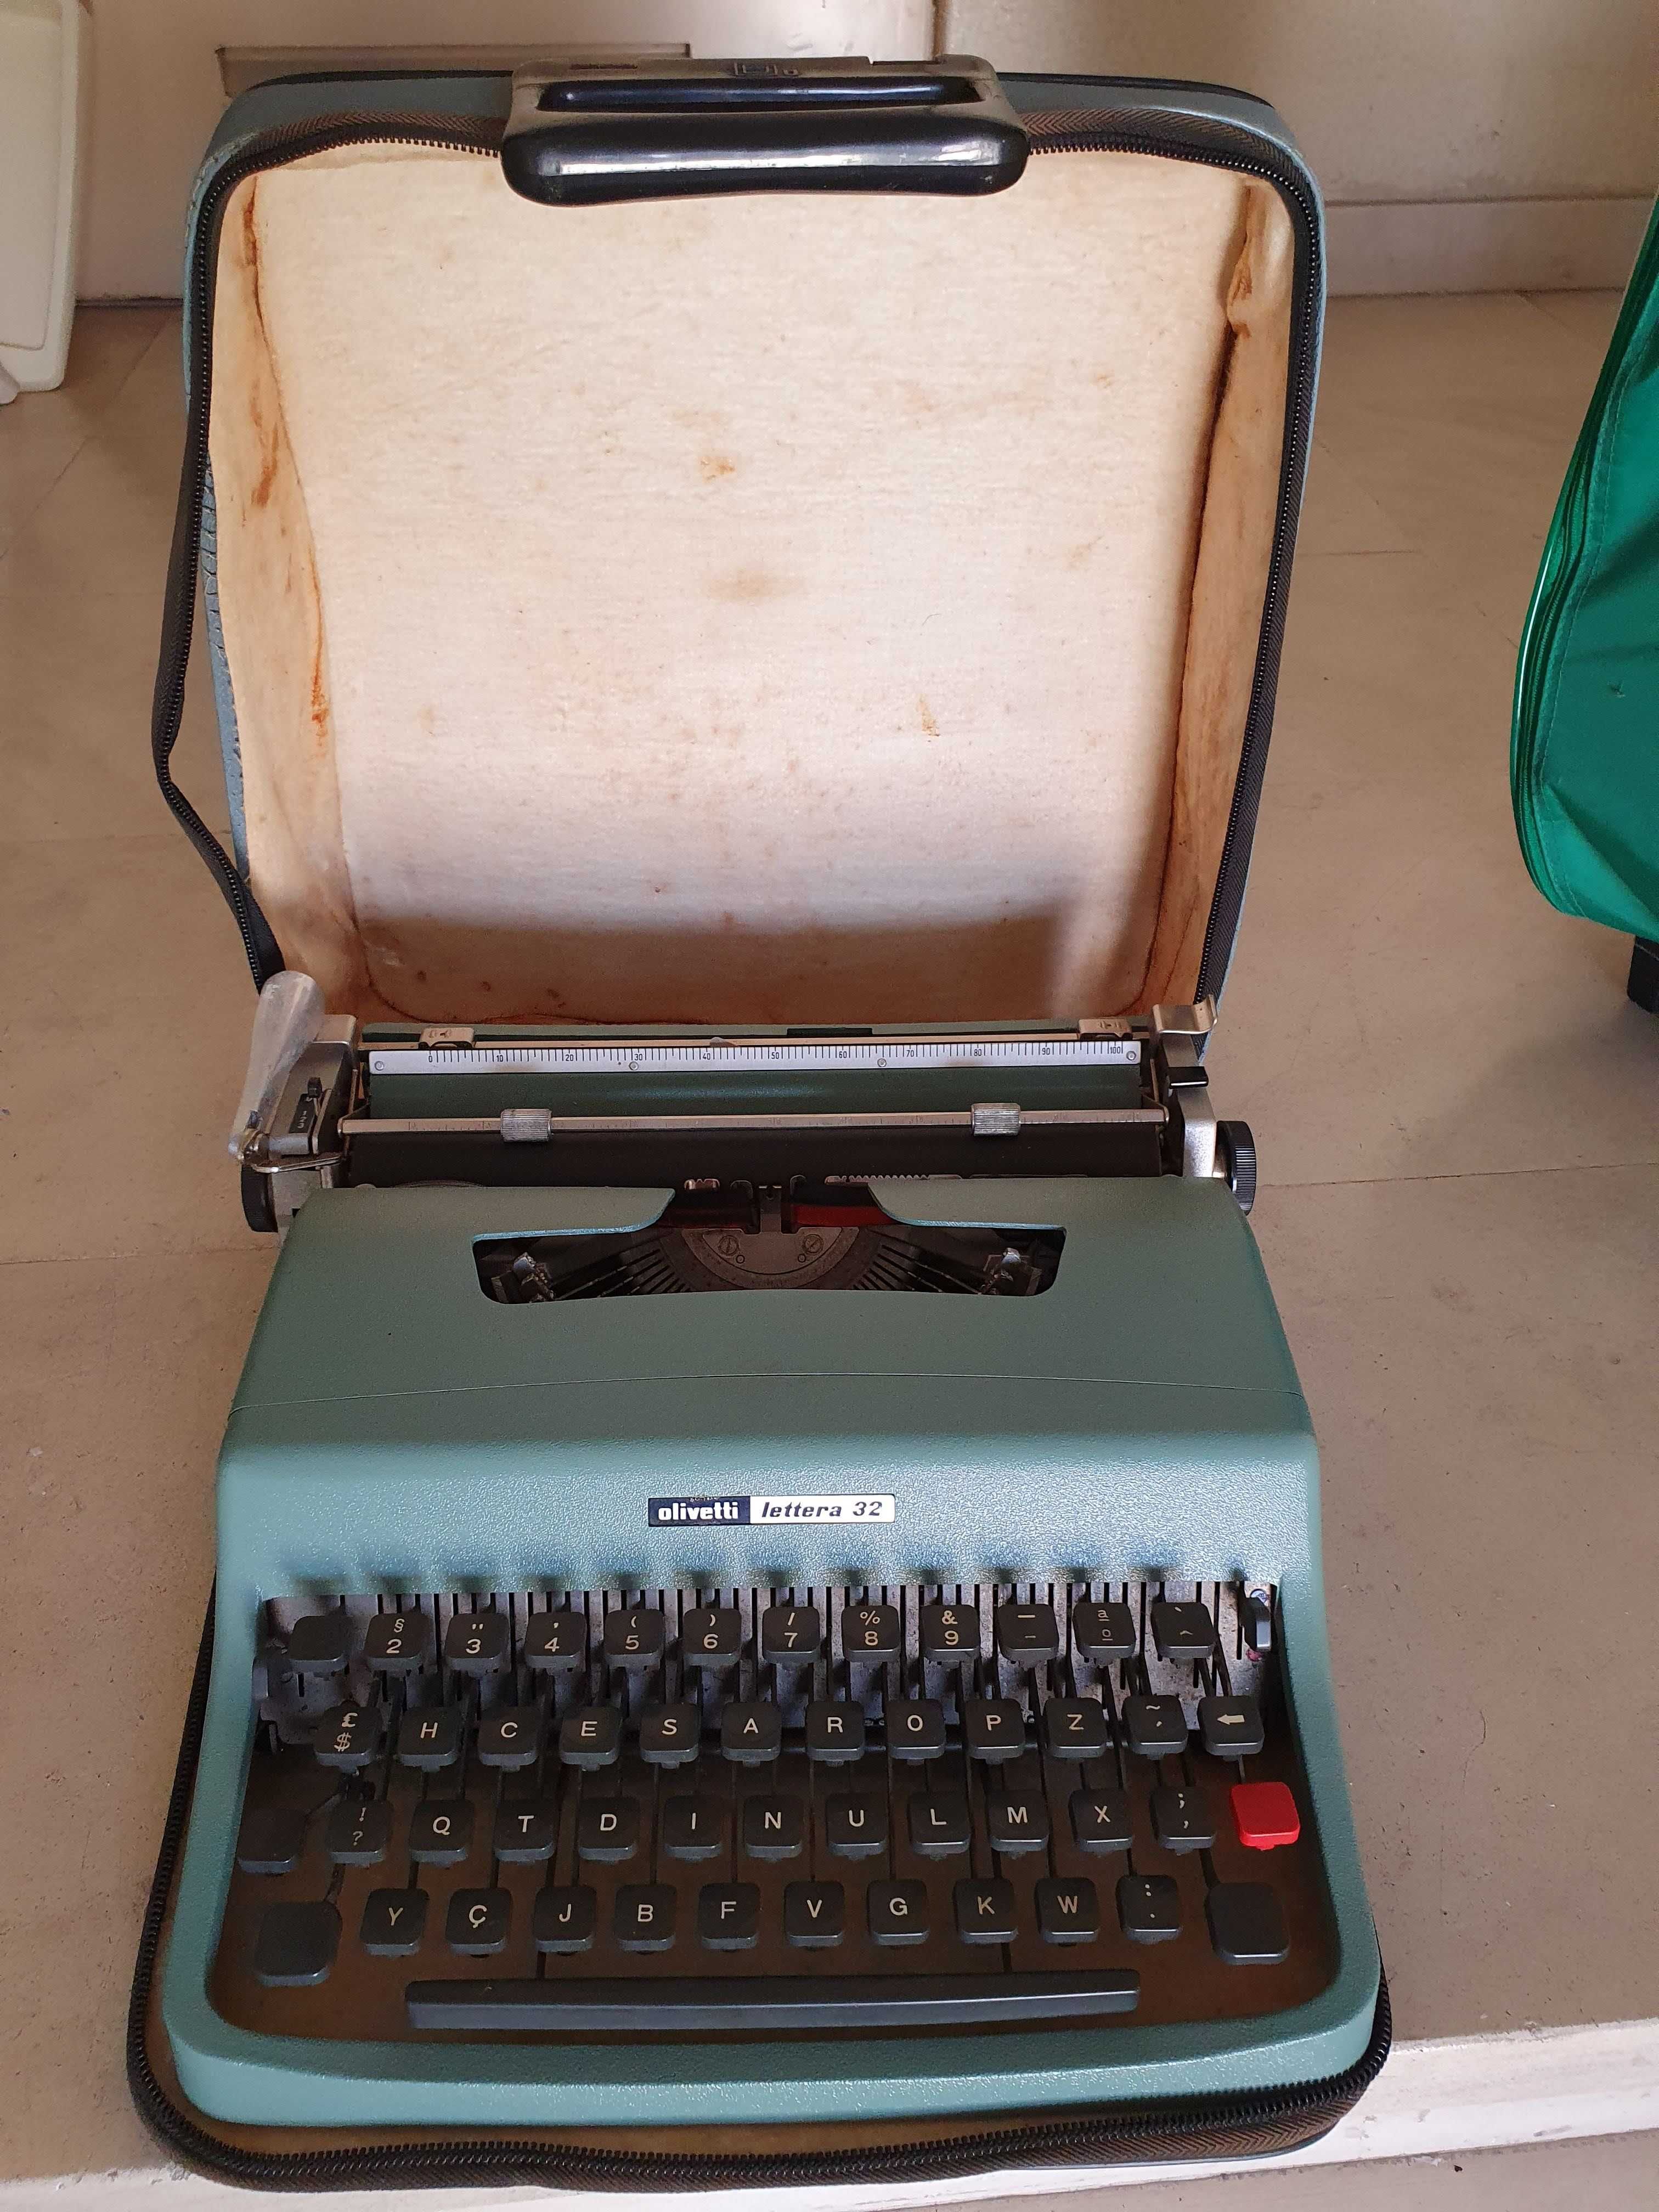 Artigo de coleção - Máquina de escrever Olivetti Lettera 32